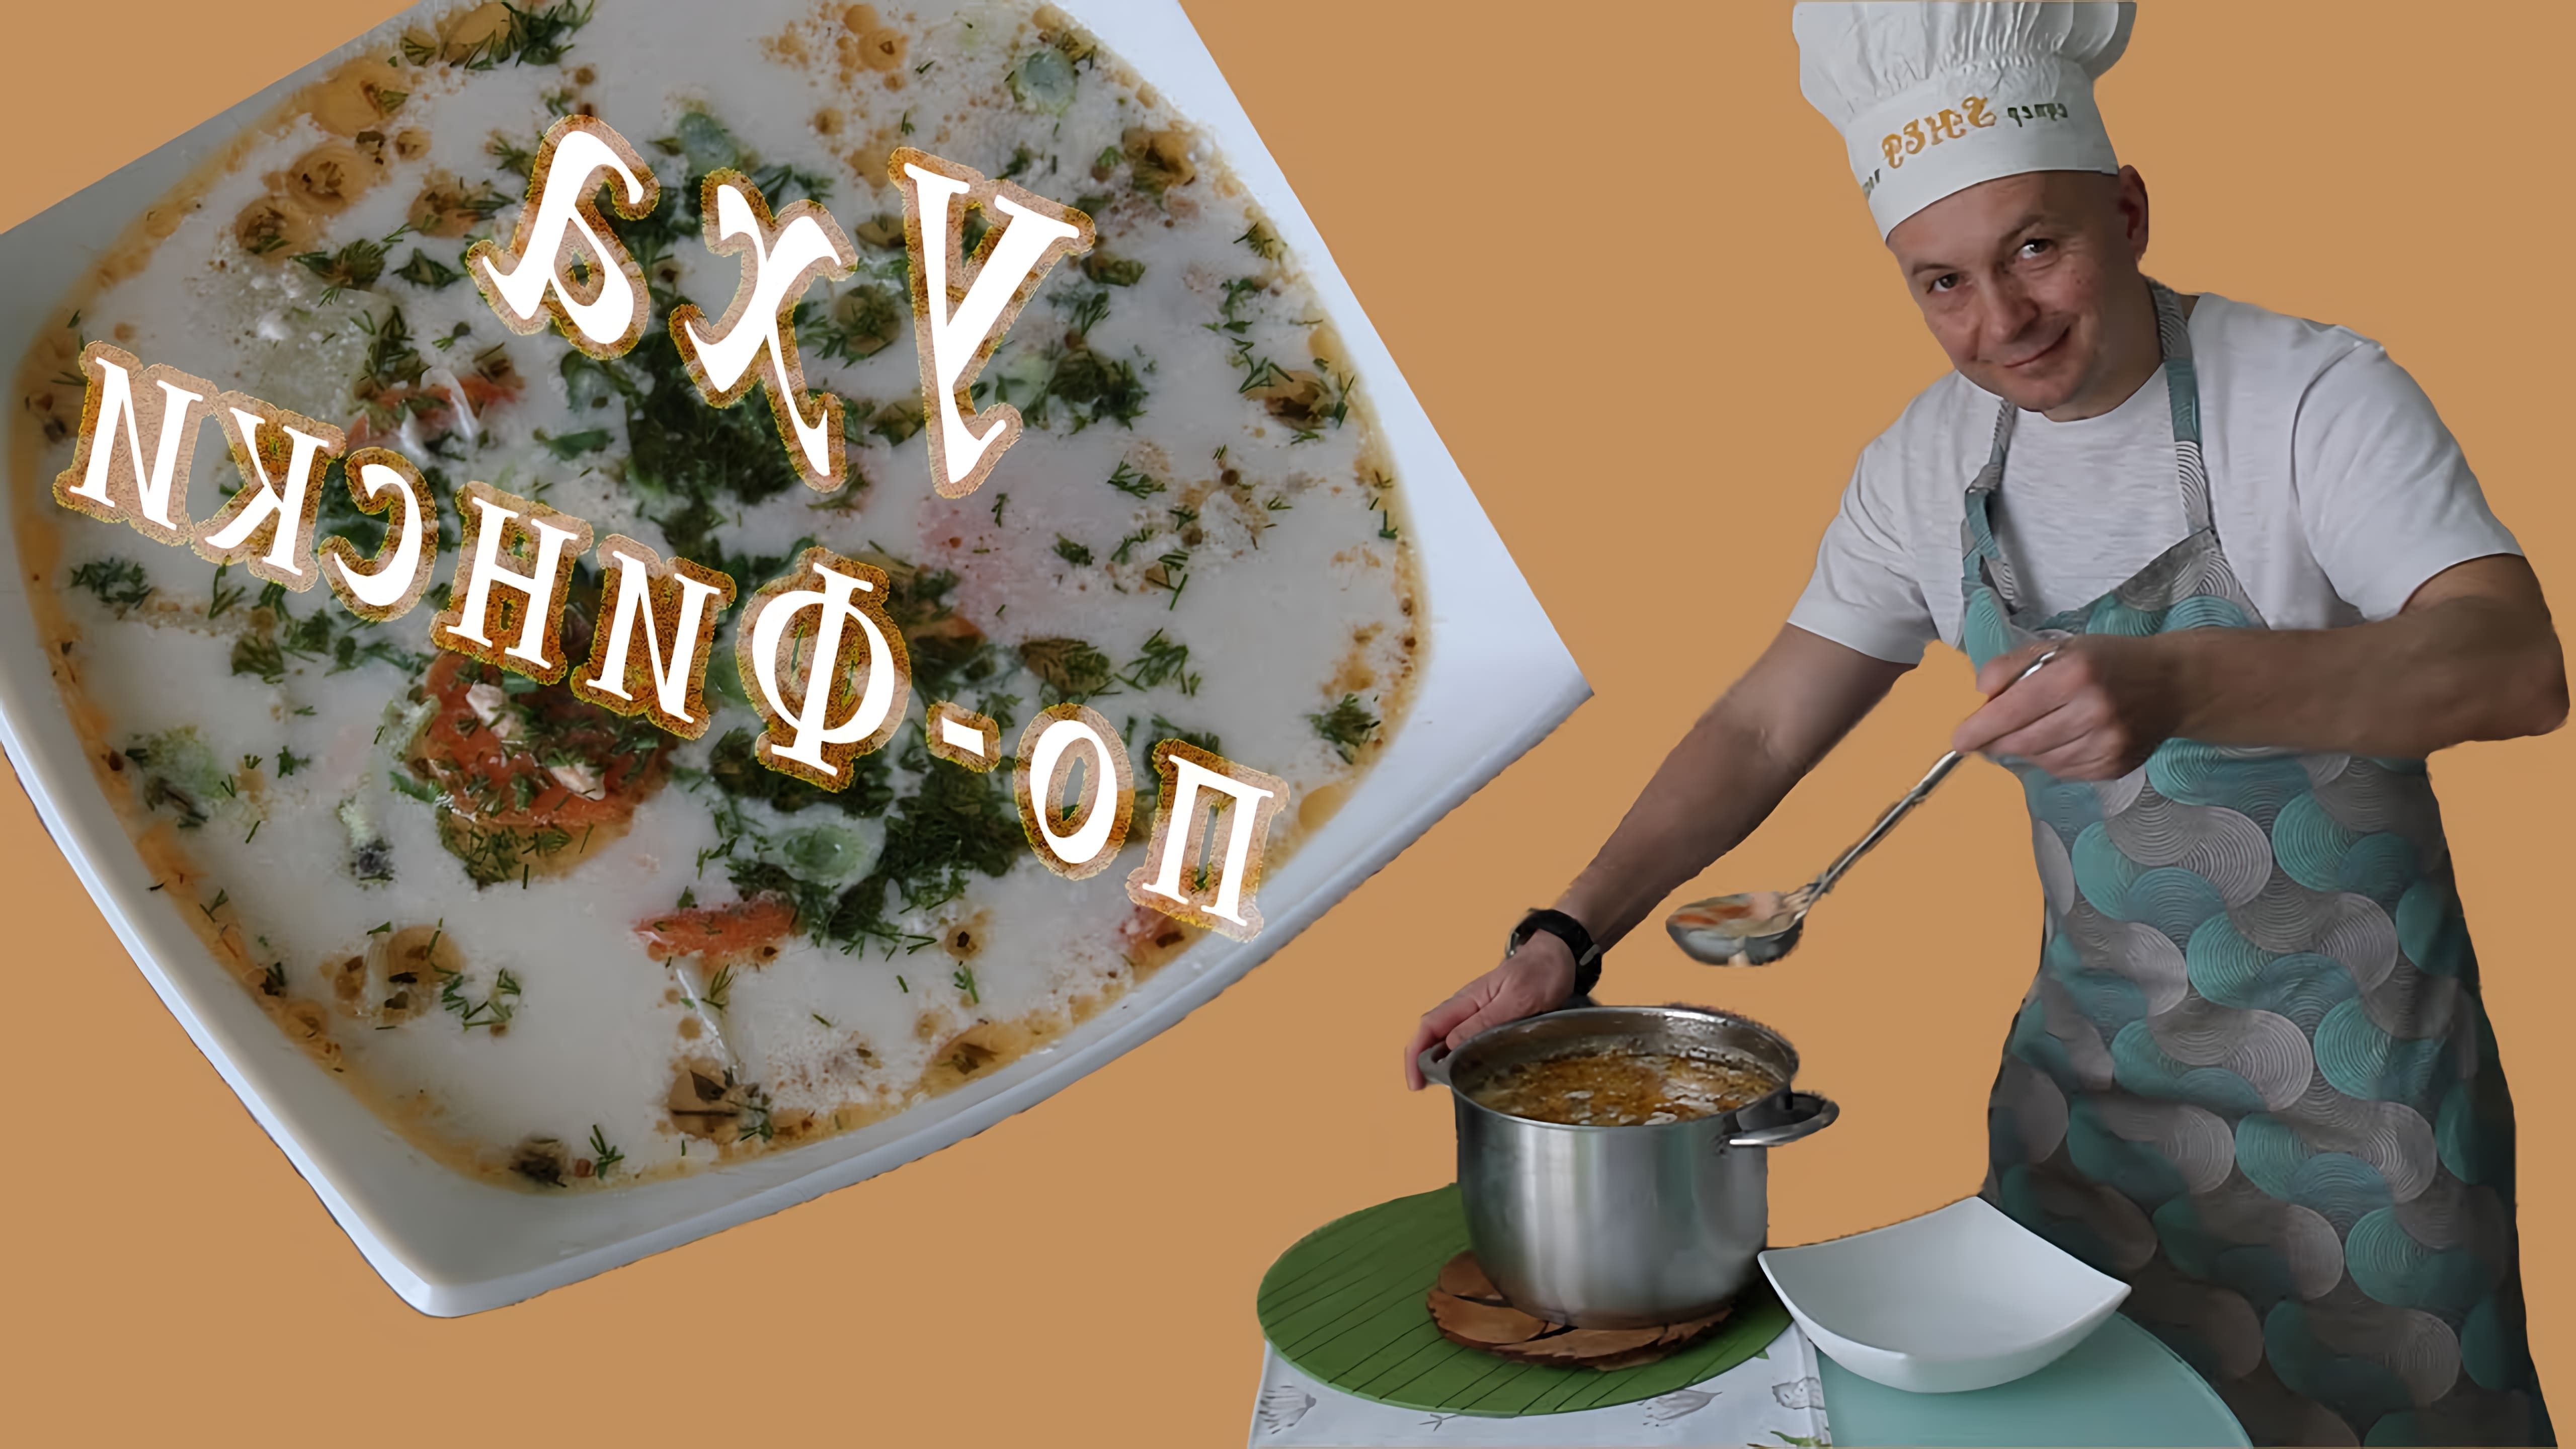 В этом видео демонстрируется рецепт приготовления финской ухи со сливками